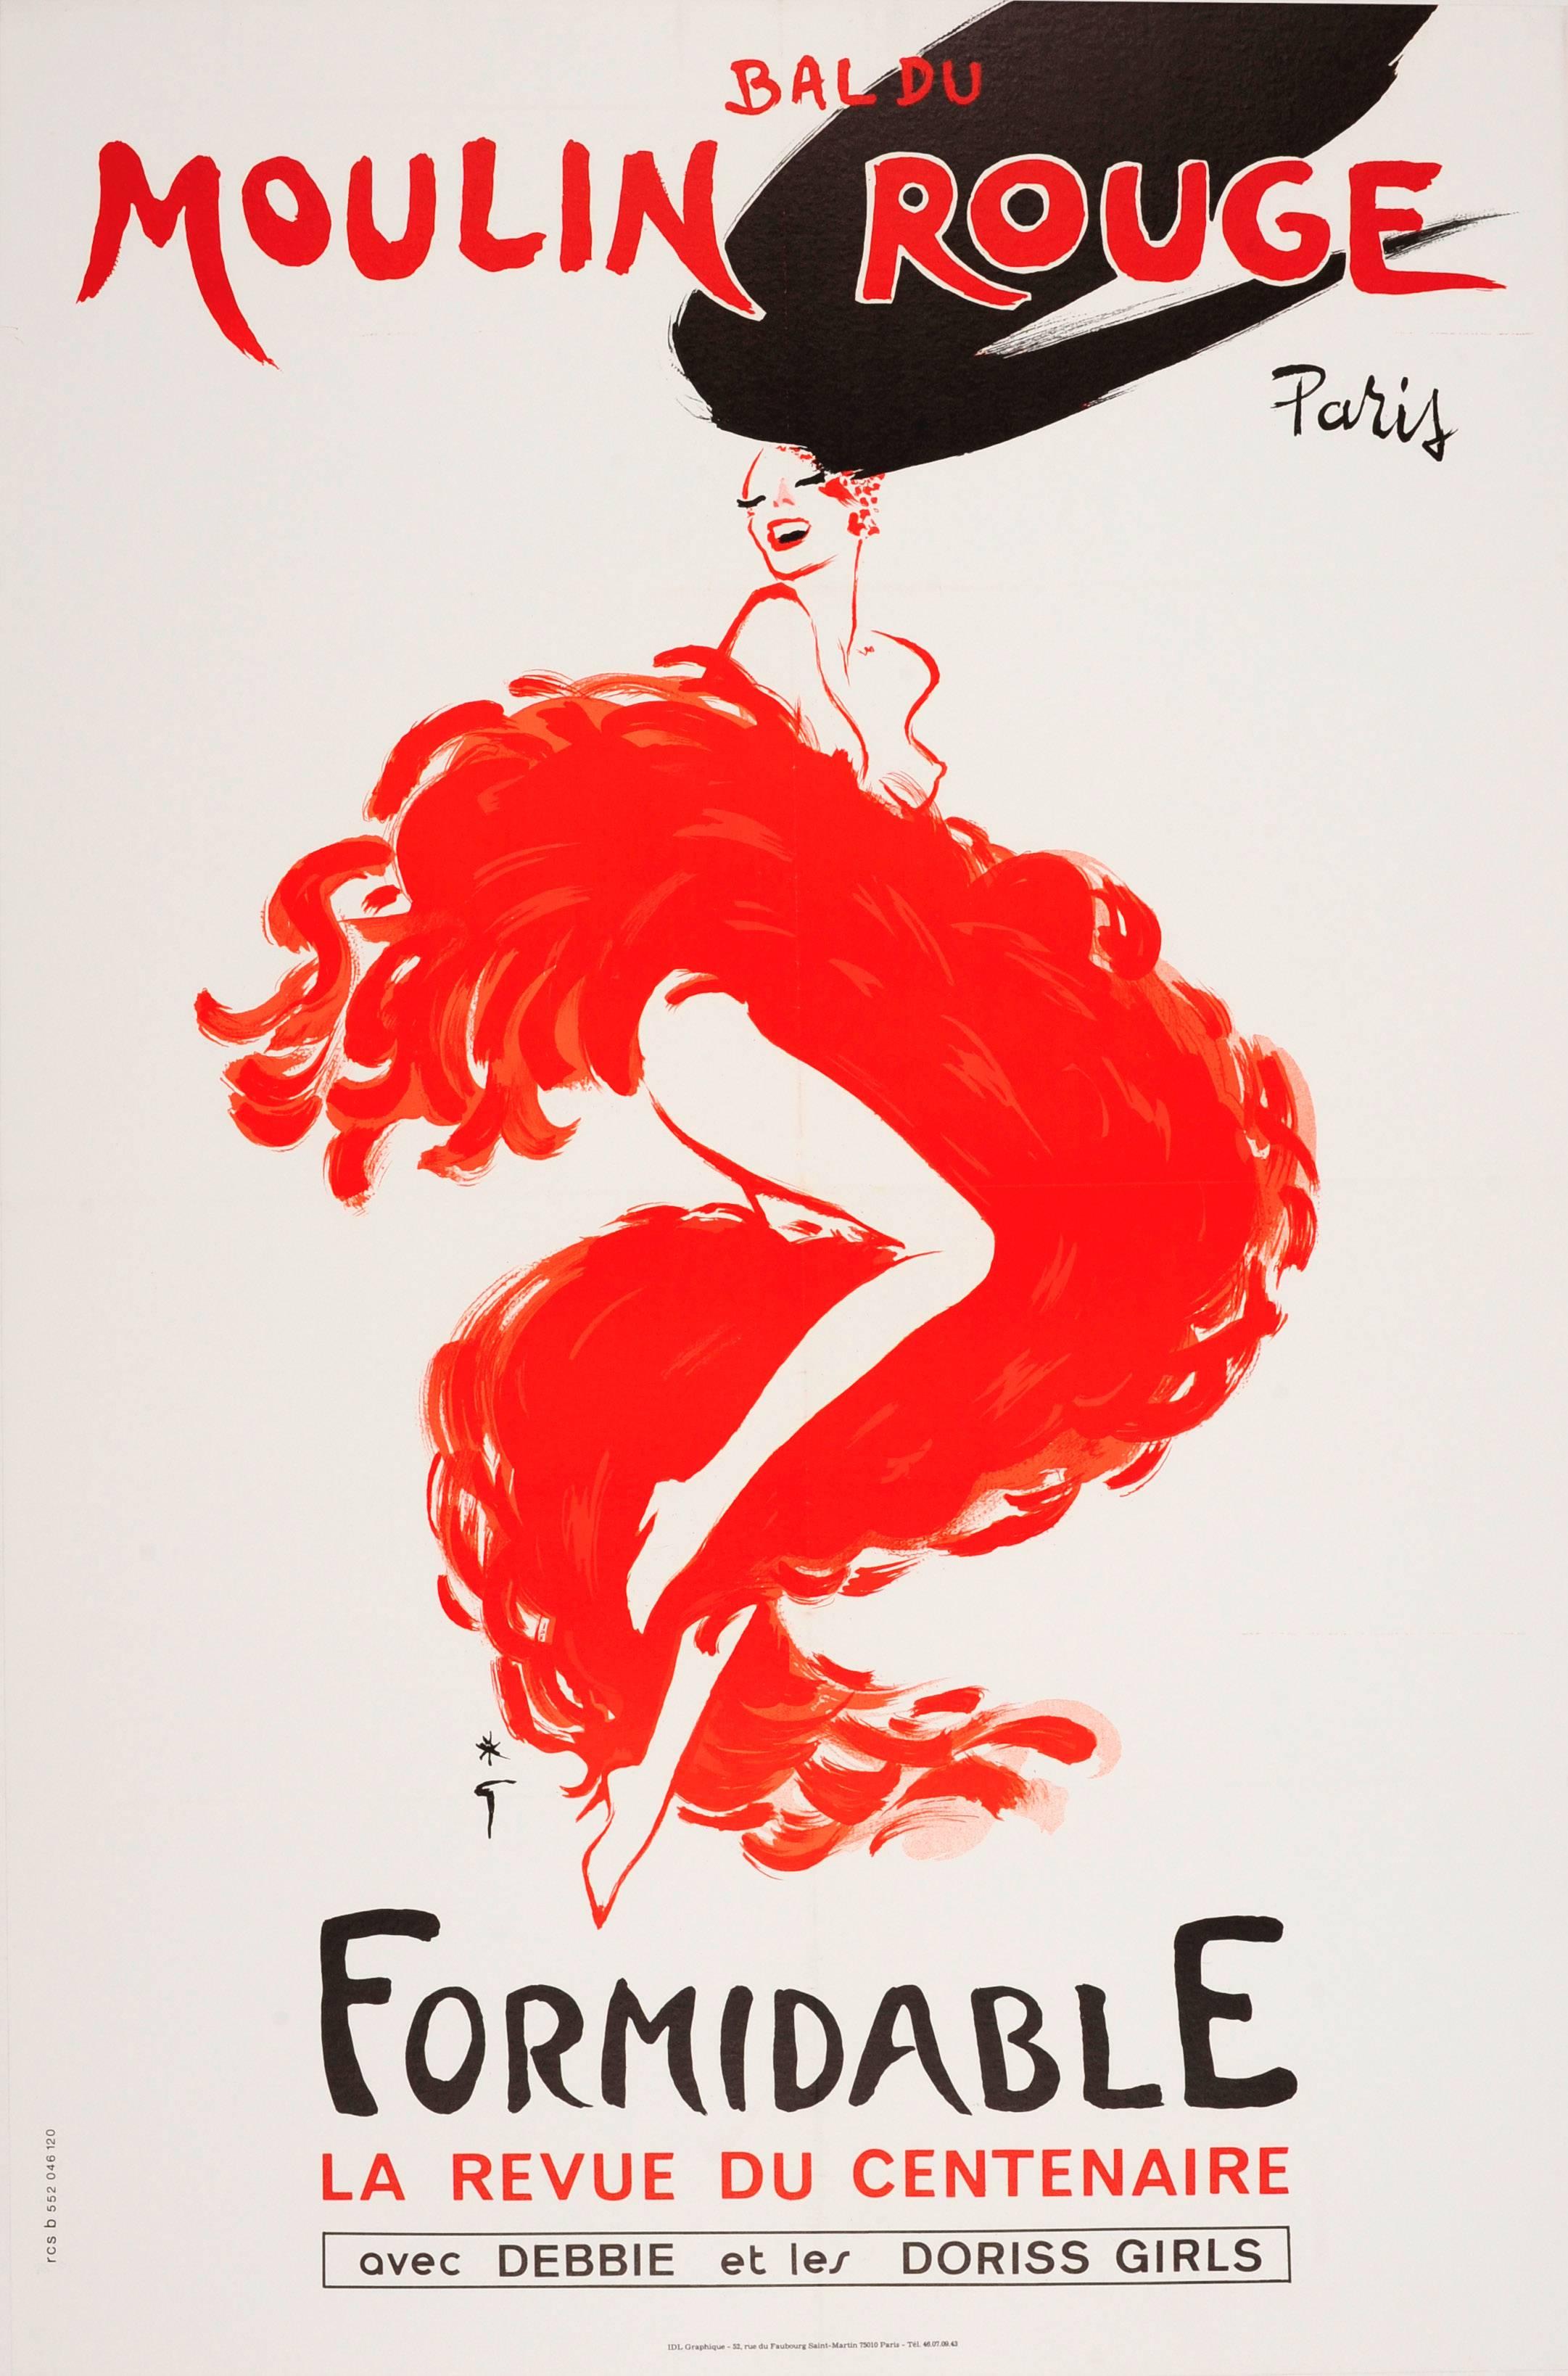 René Gruau Print - Original Vintage Moulin Rouge Paris Centenary Revue Cabaret Poster By Rene Gruau